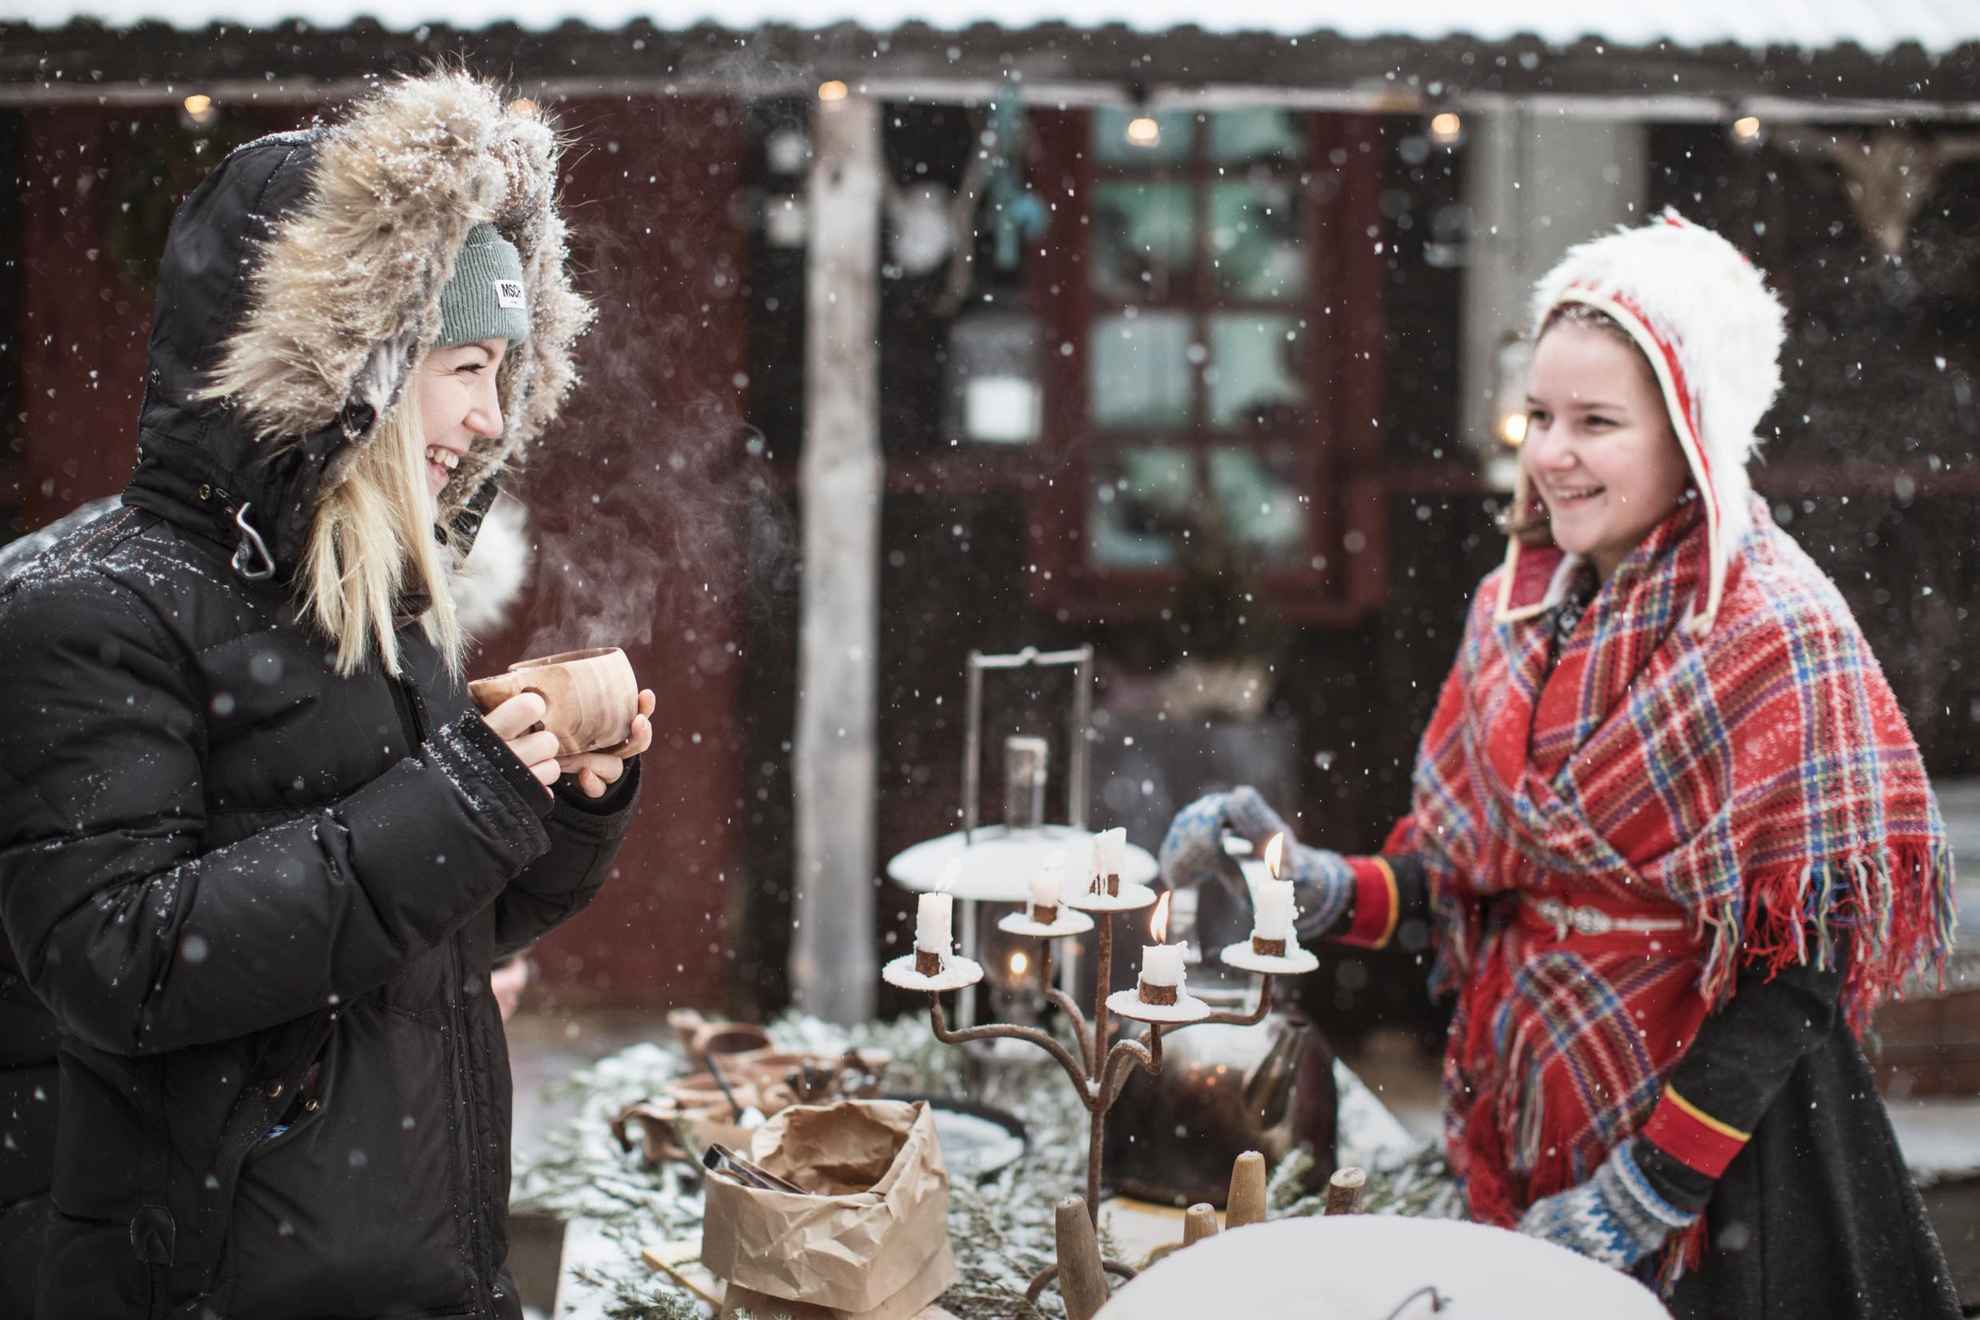 Zwei Frauen stehen an einem Tisch und halten eine Fika im Freien im Schnee. Auf dem Tisch steht ein alter Kandelaber mit brennenden Kerzen. Eine der beiden Frauen trägt eine samische Tracht. Es schneit.